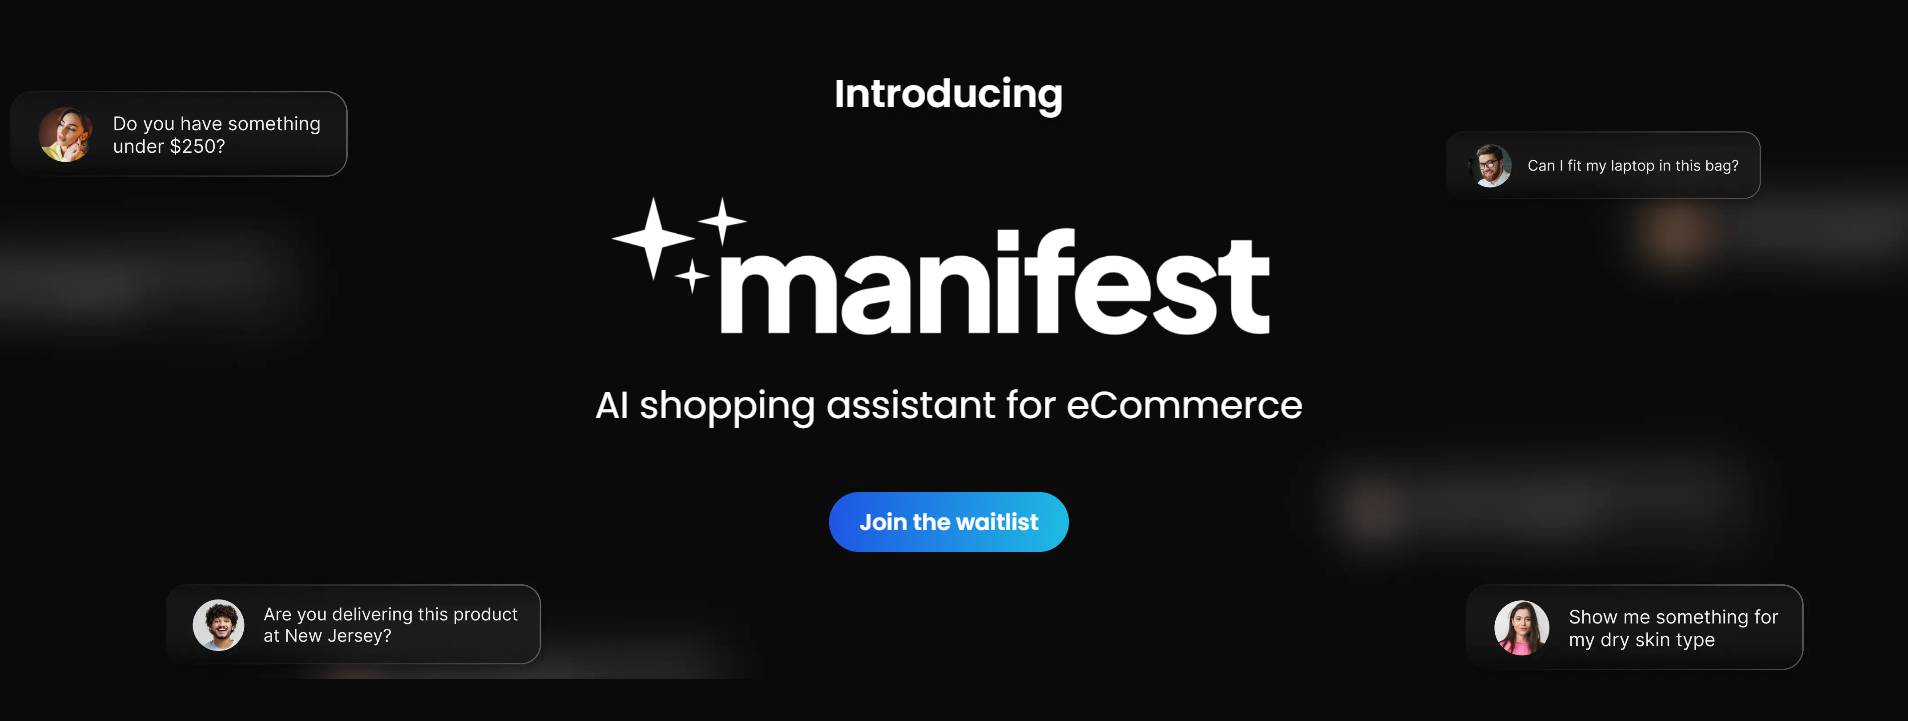 Manifest AI - Eine Shopify -App, die Käufern hilft, relevante Produkte und Informationen zu finden